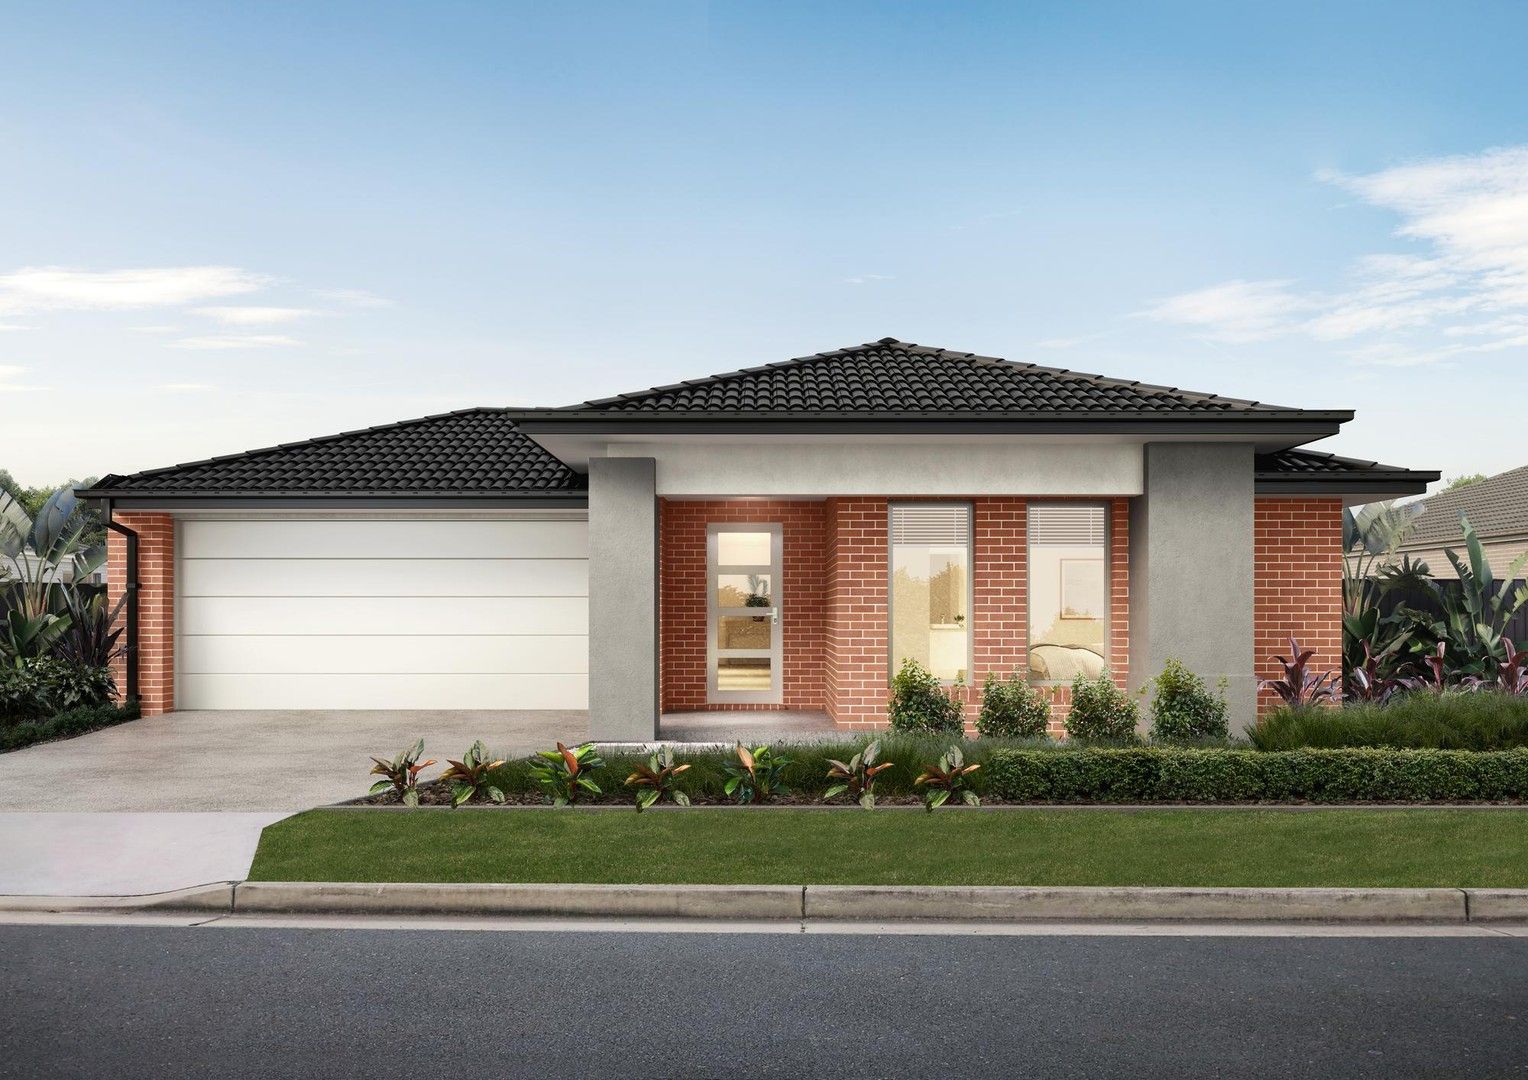 4 bedrooms New House & Land in 29 Flinders Street NURIOOTPA SA, 5355